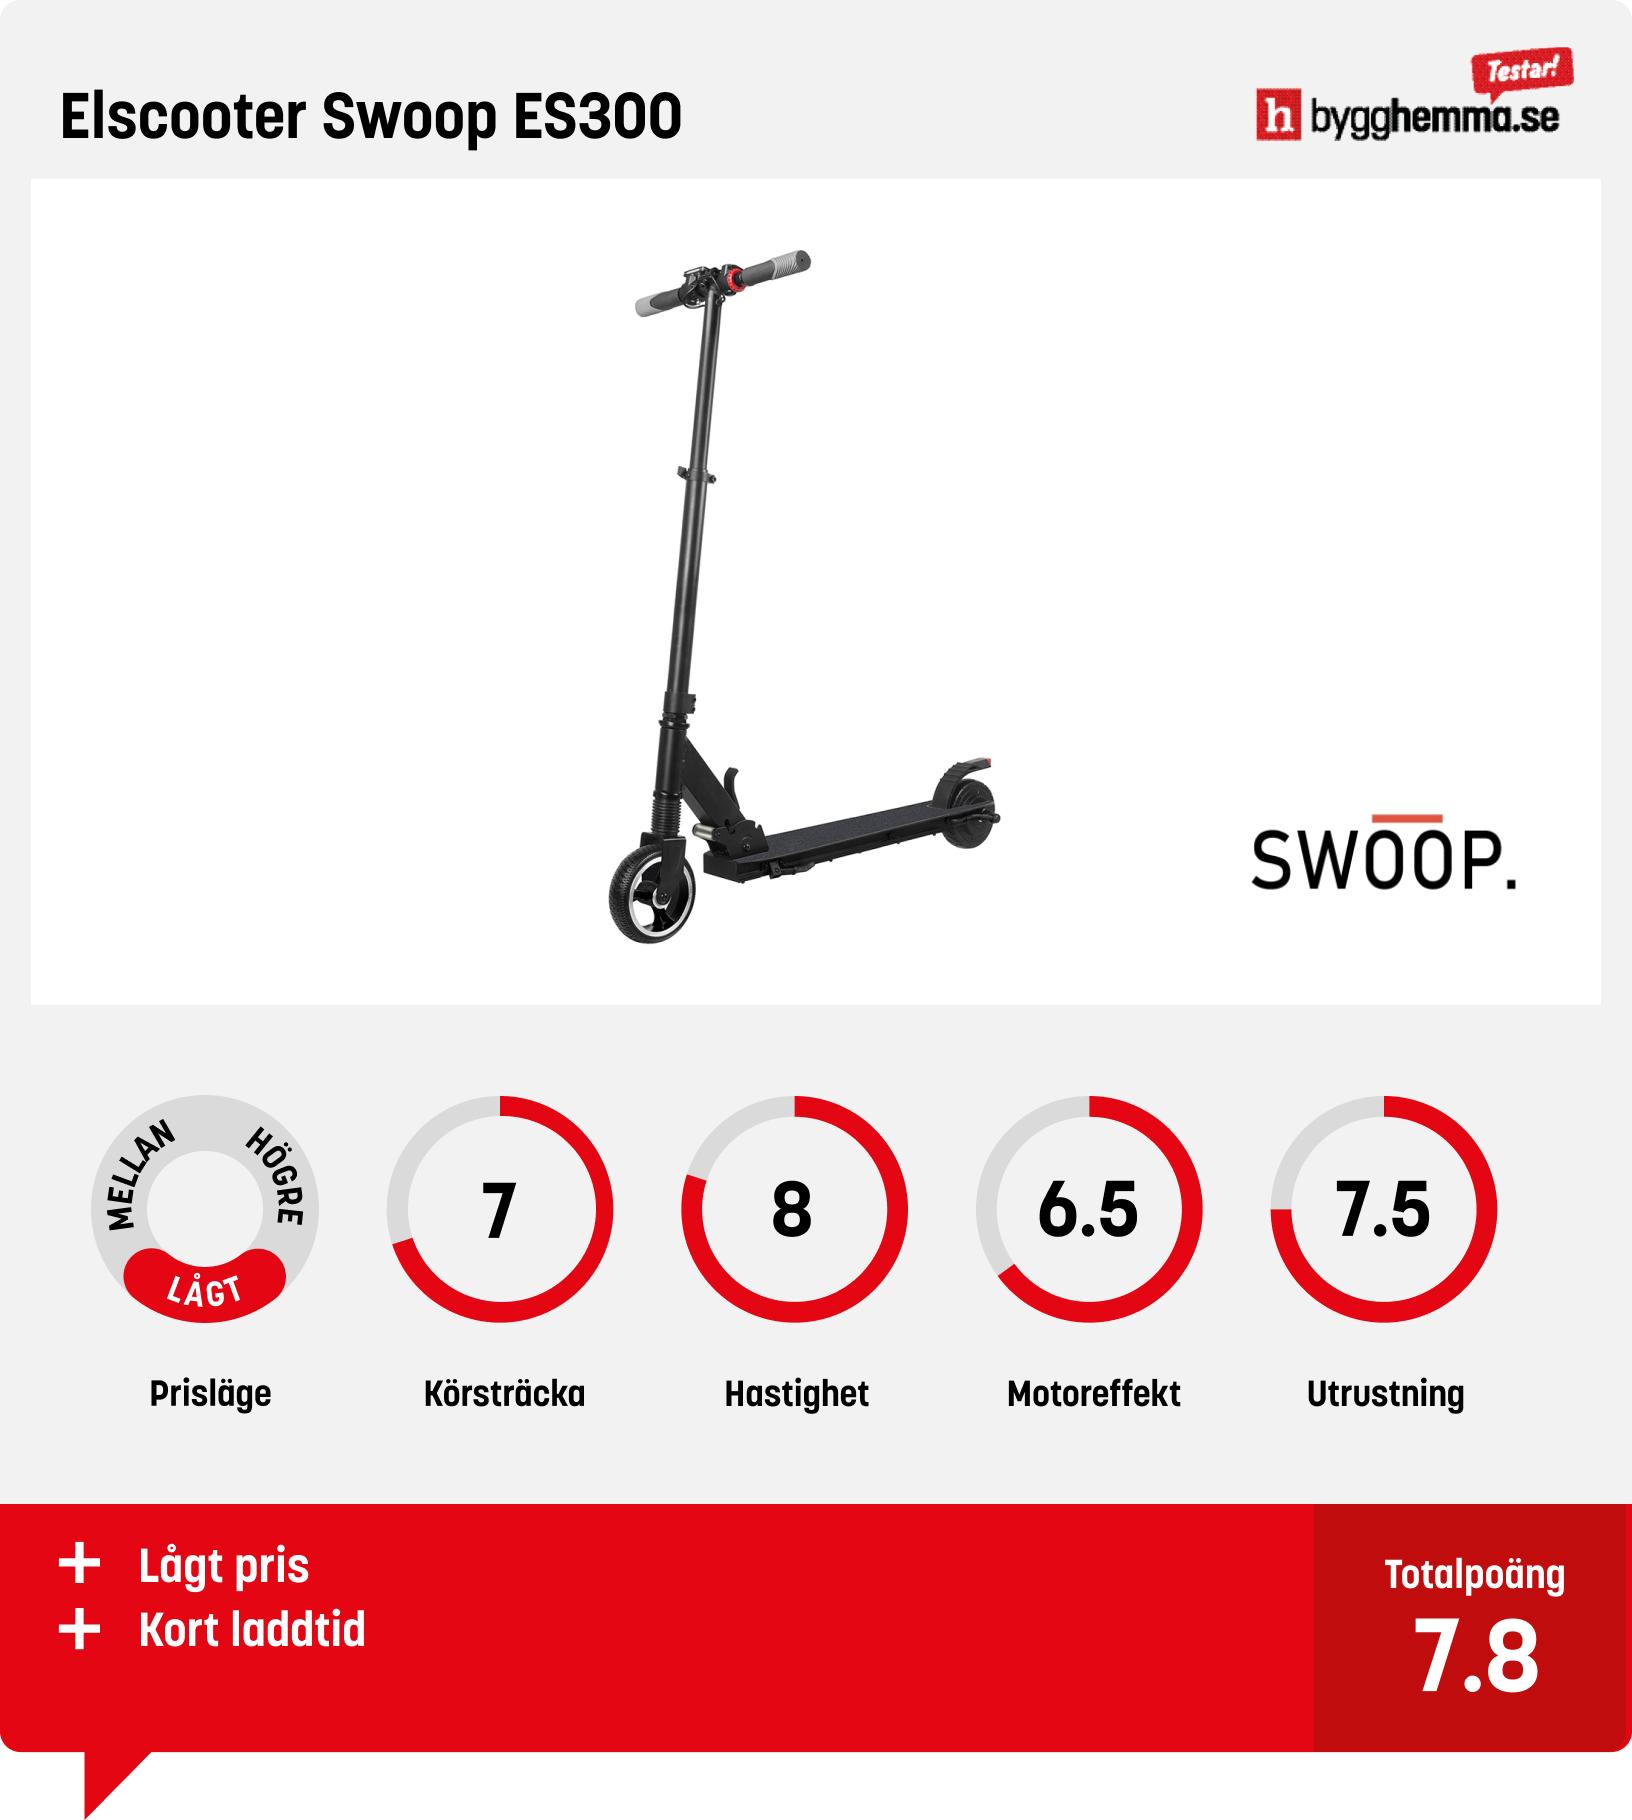 Elscooter bäst i test - Elscooter Swoop ES300